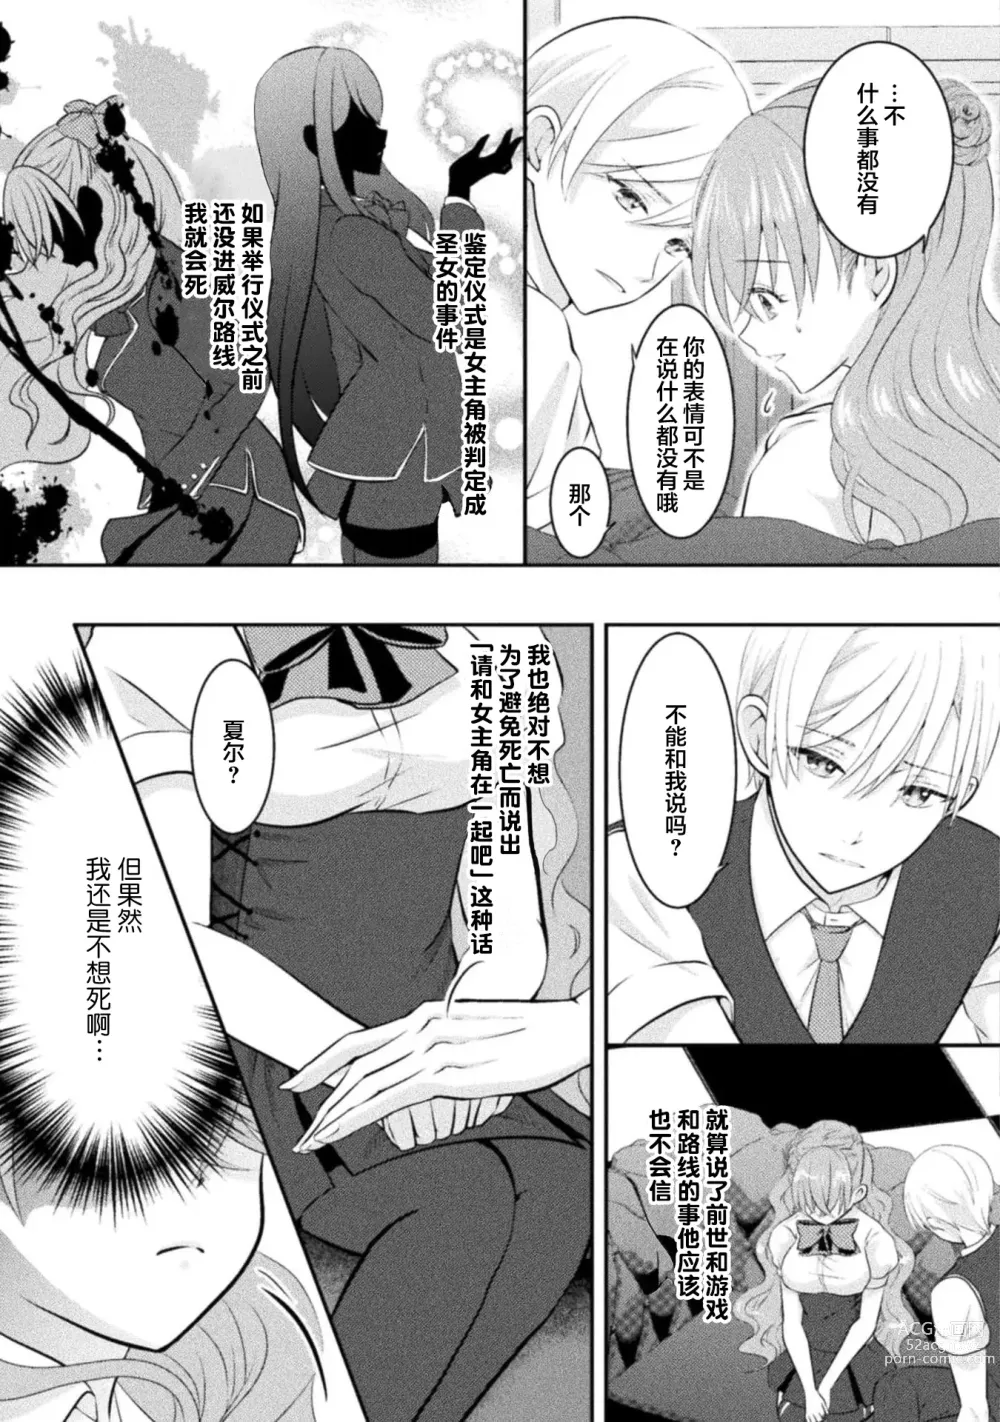 Page 55 of manga 恶役千金被腹黑王子执着爱、淫乱惩罚逃不掉 1-2